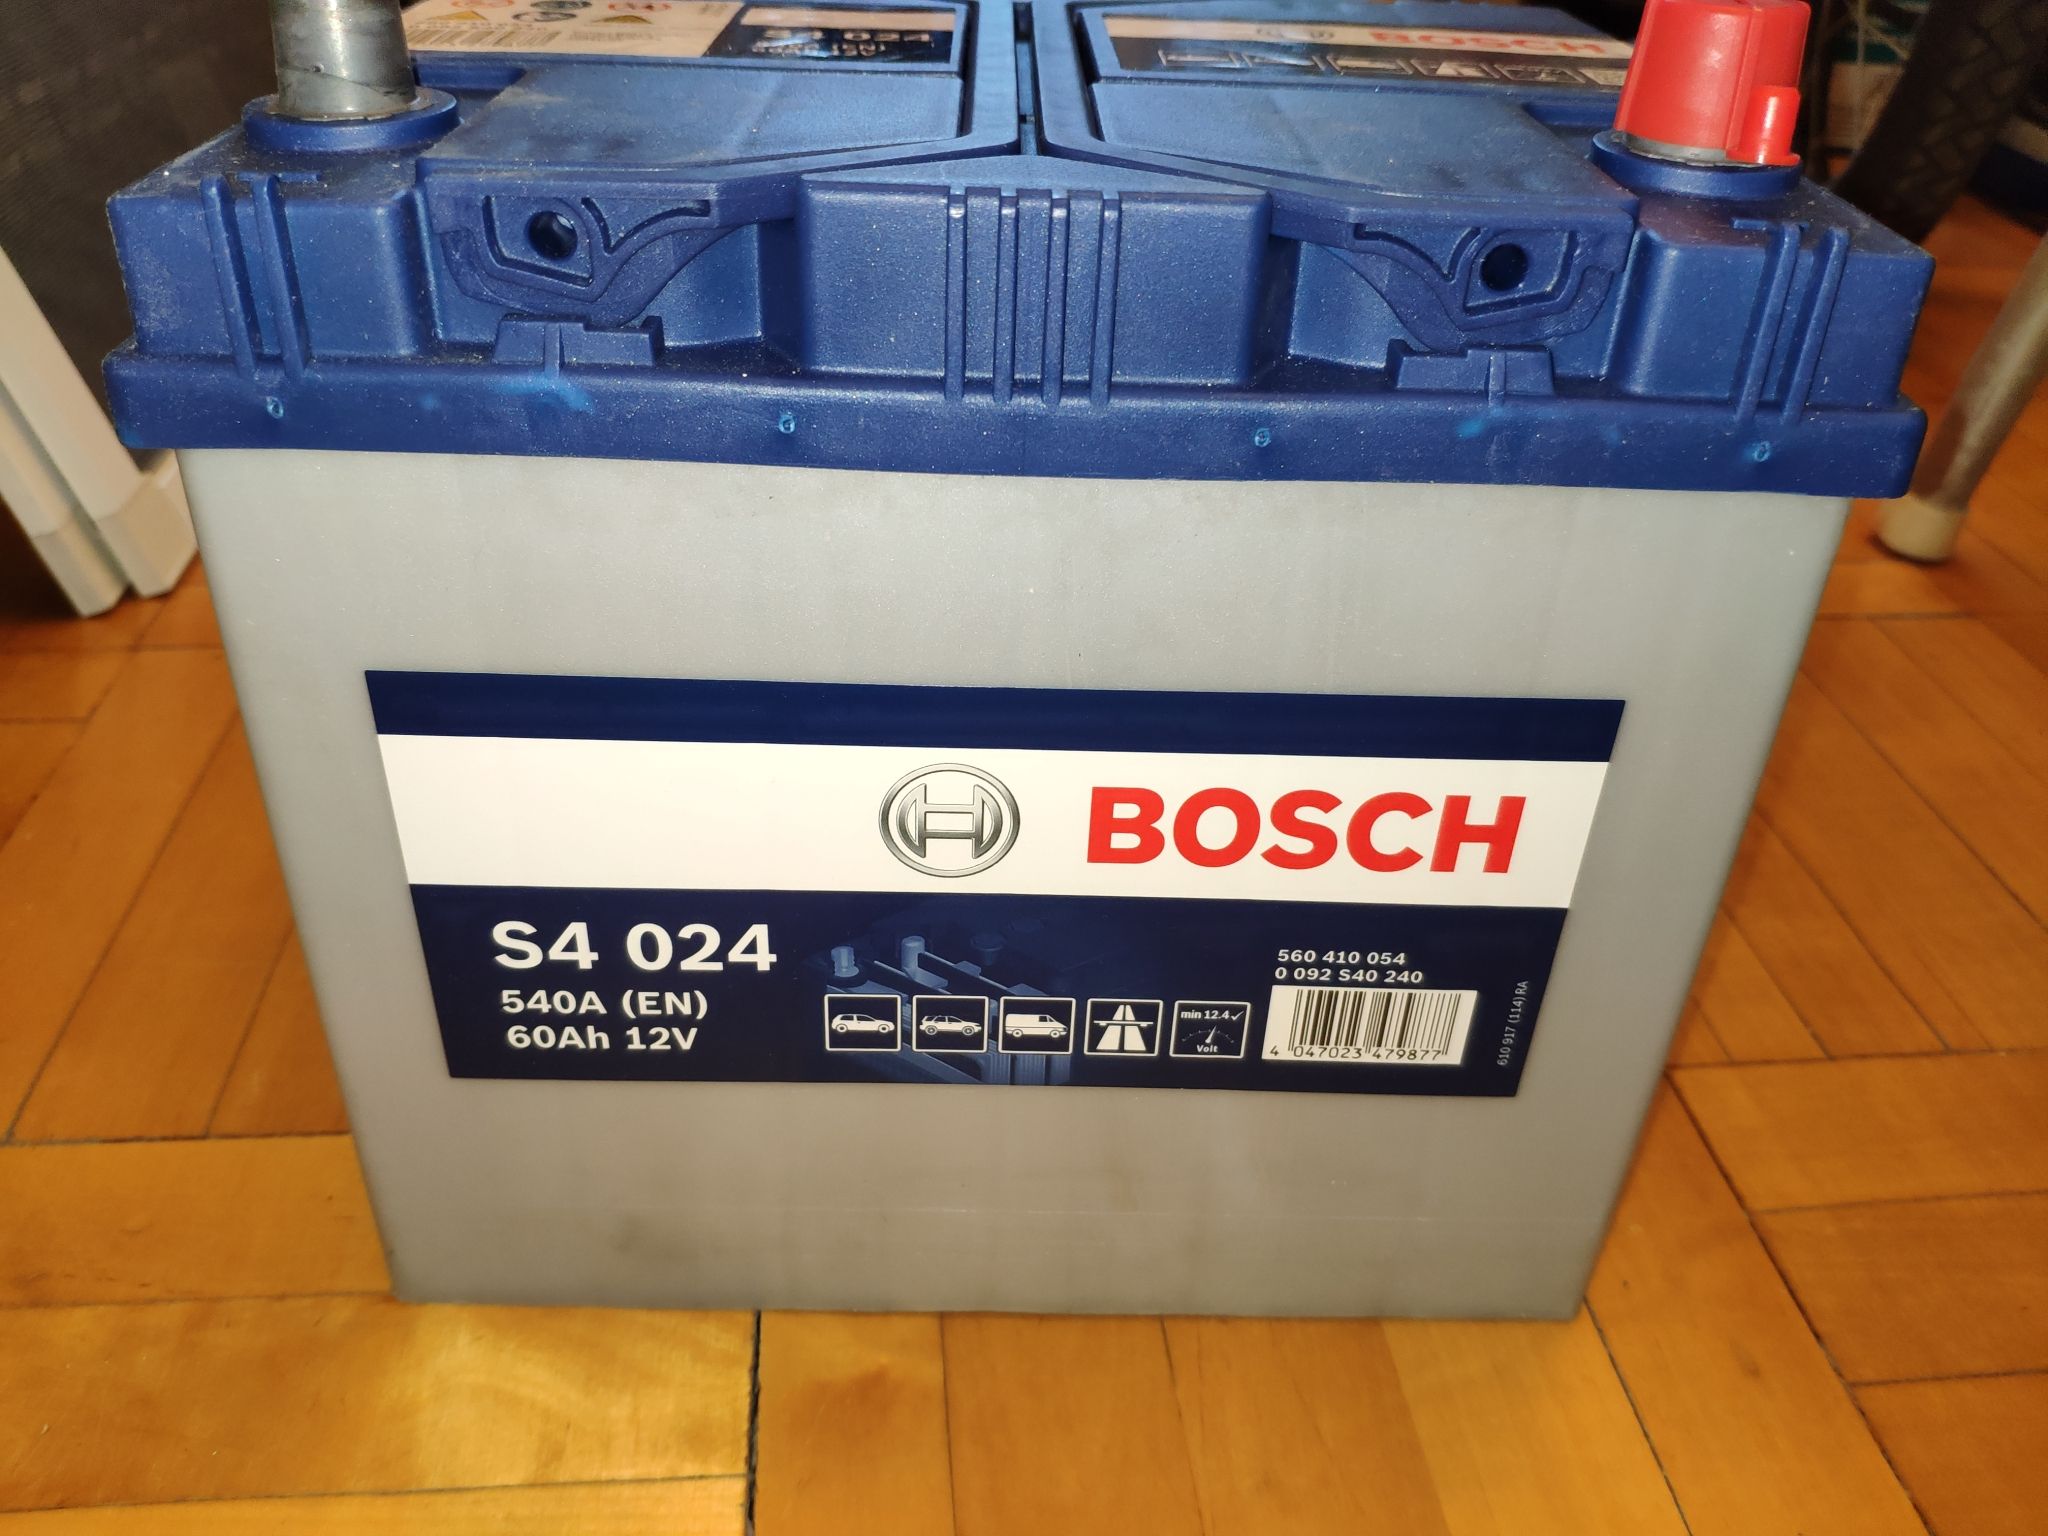 Bosch s4 купить. Bosch s4 004 60 Ач. Bosch s4 60ач. Bosch 560 410 054 s4 024. Bosch s4 024.